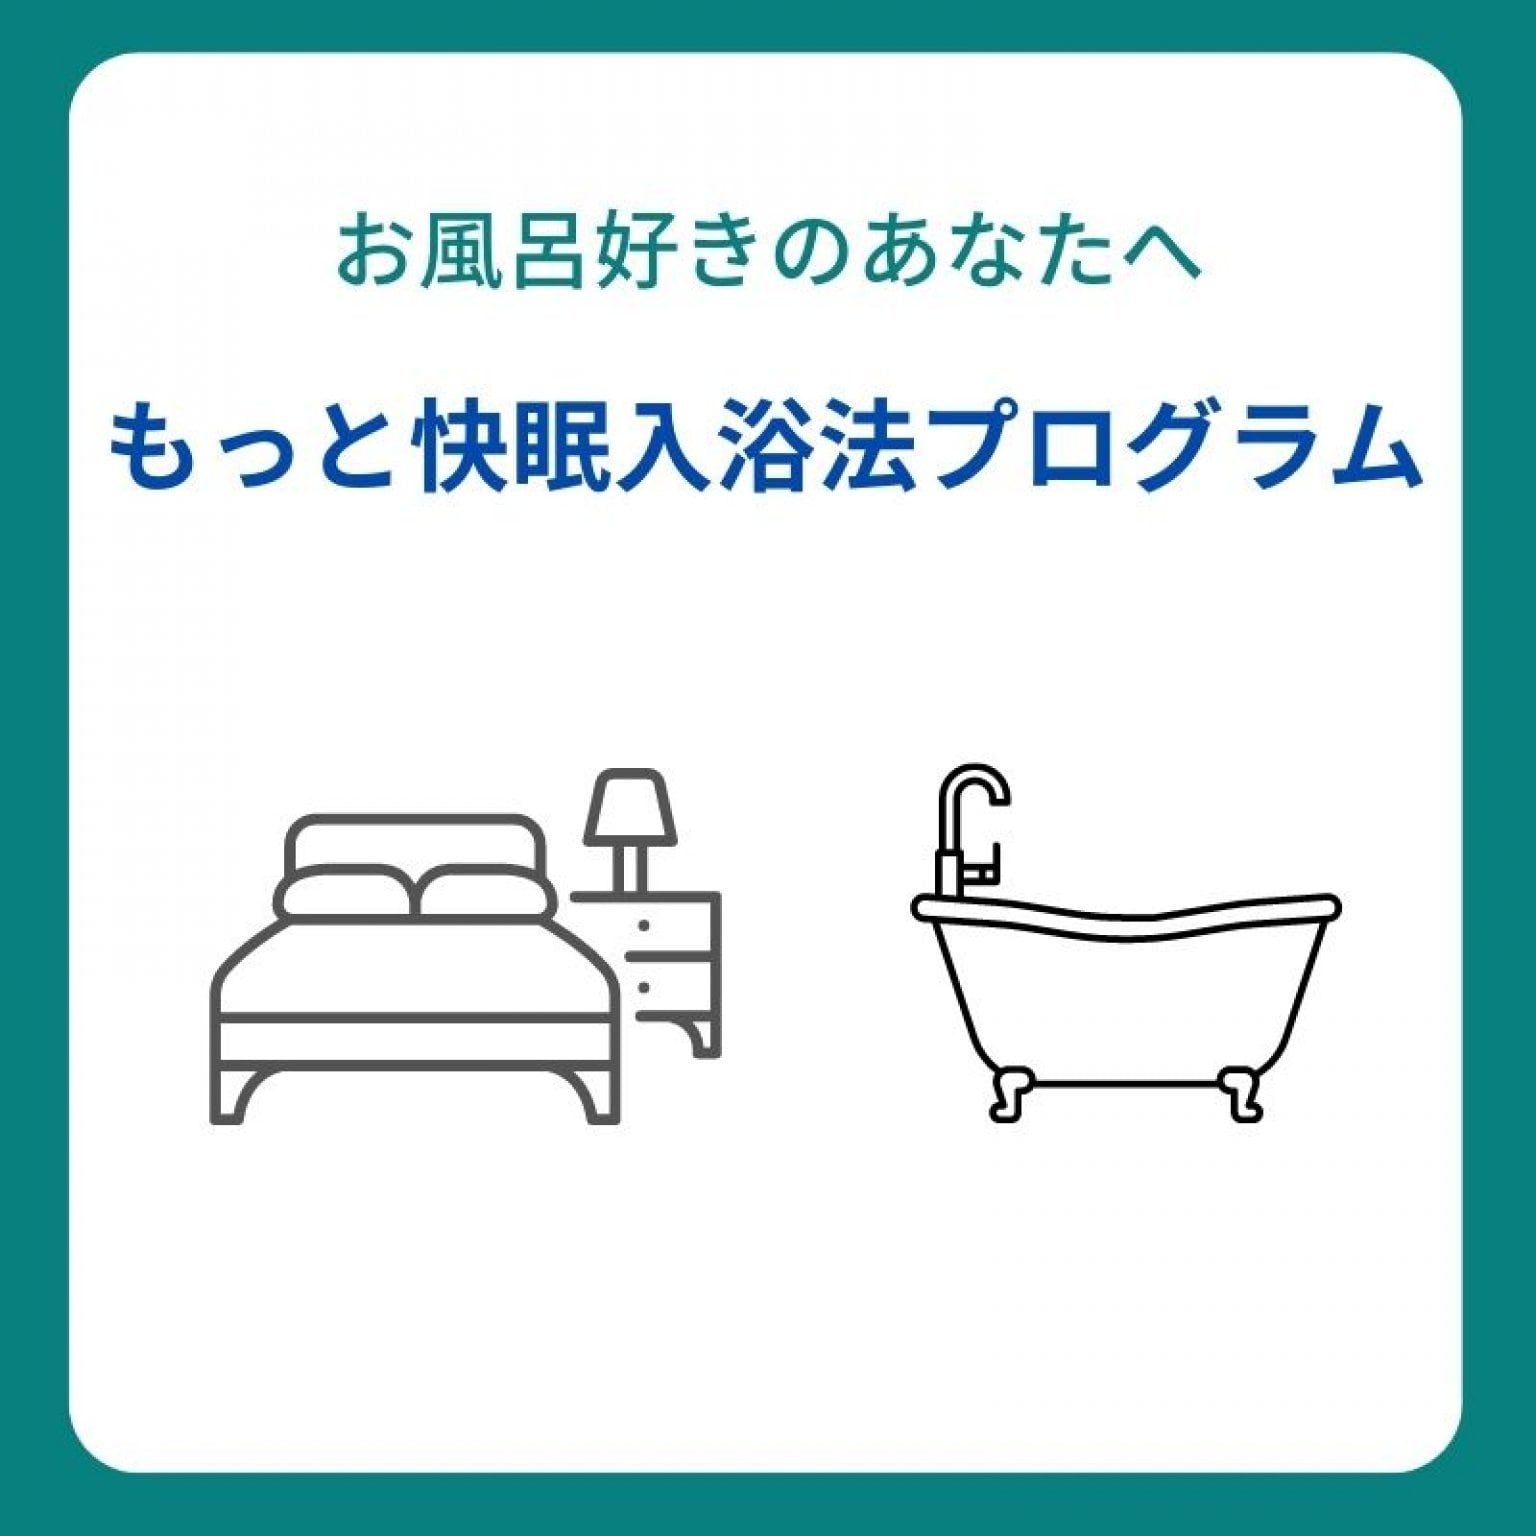 お風呂好きのあなたへ【もっと快眠入浴法プログラム】